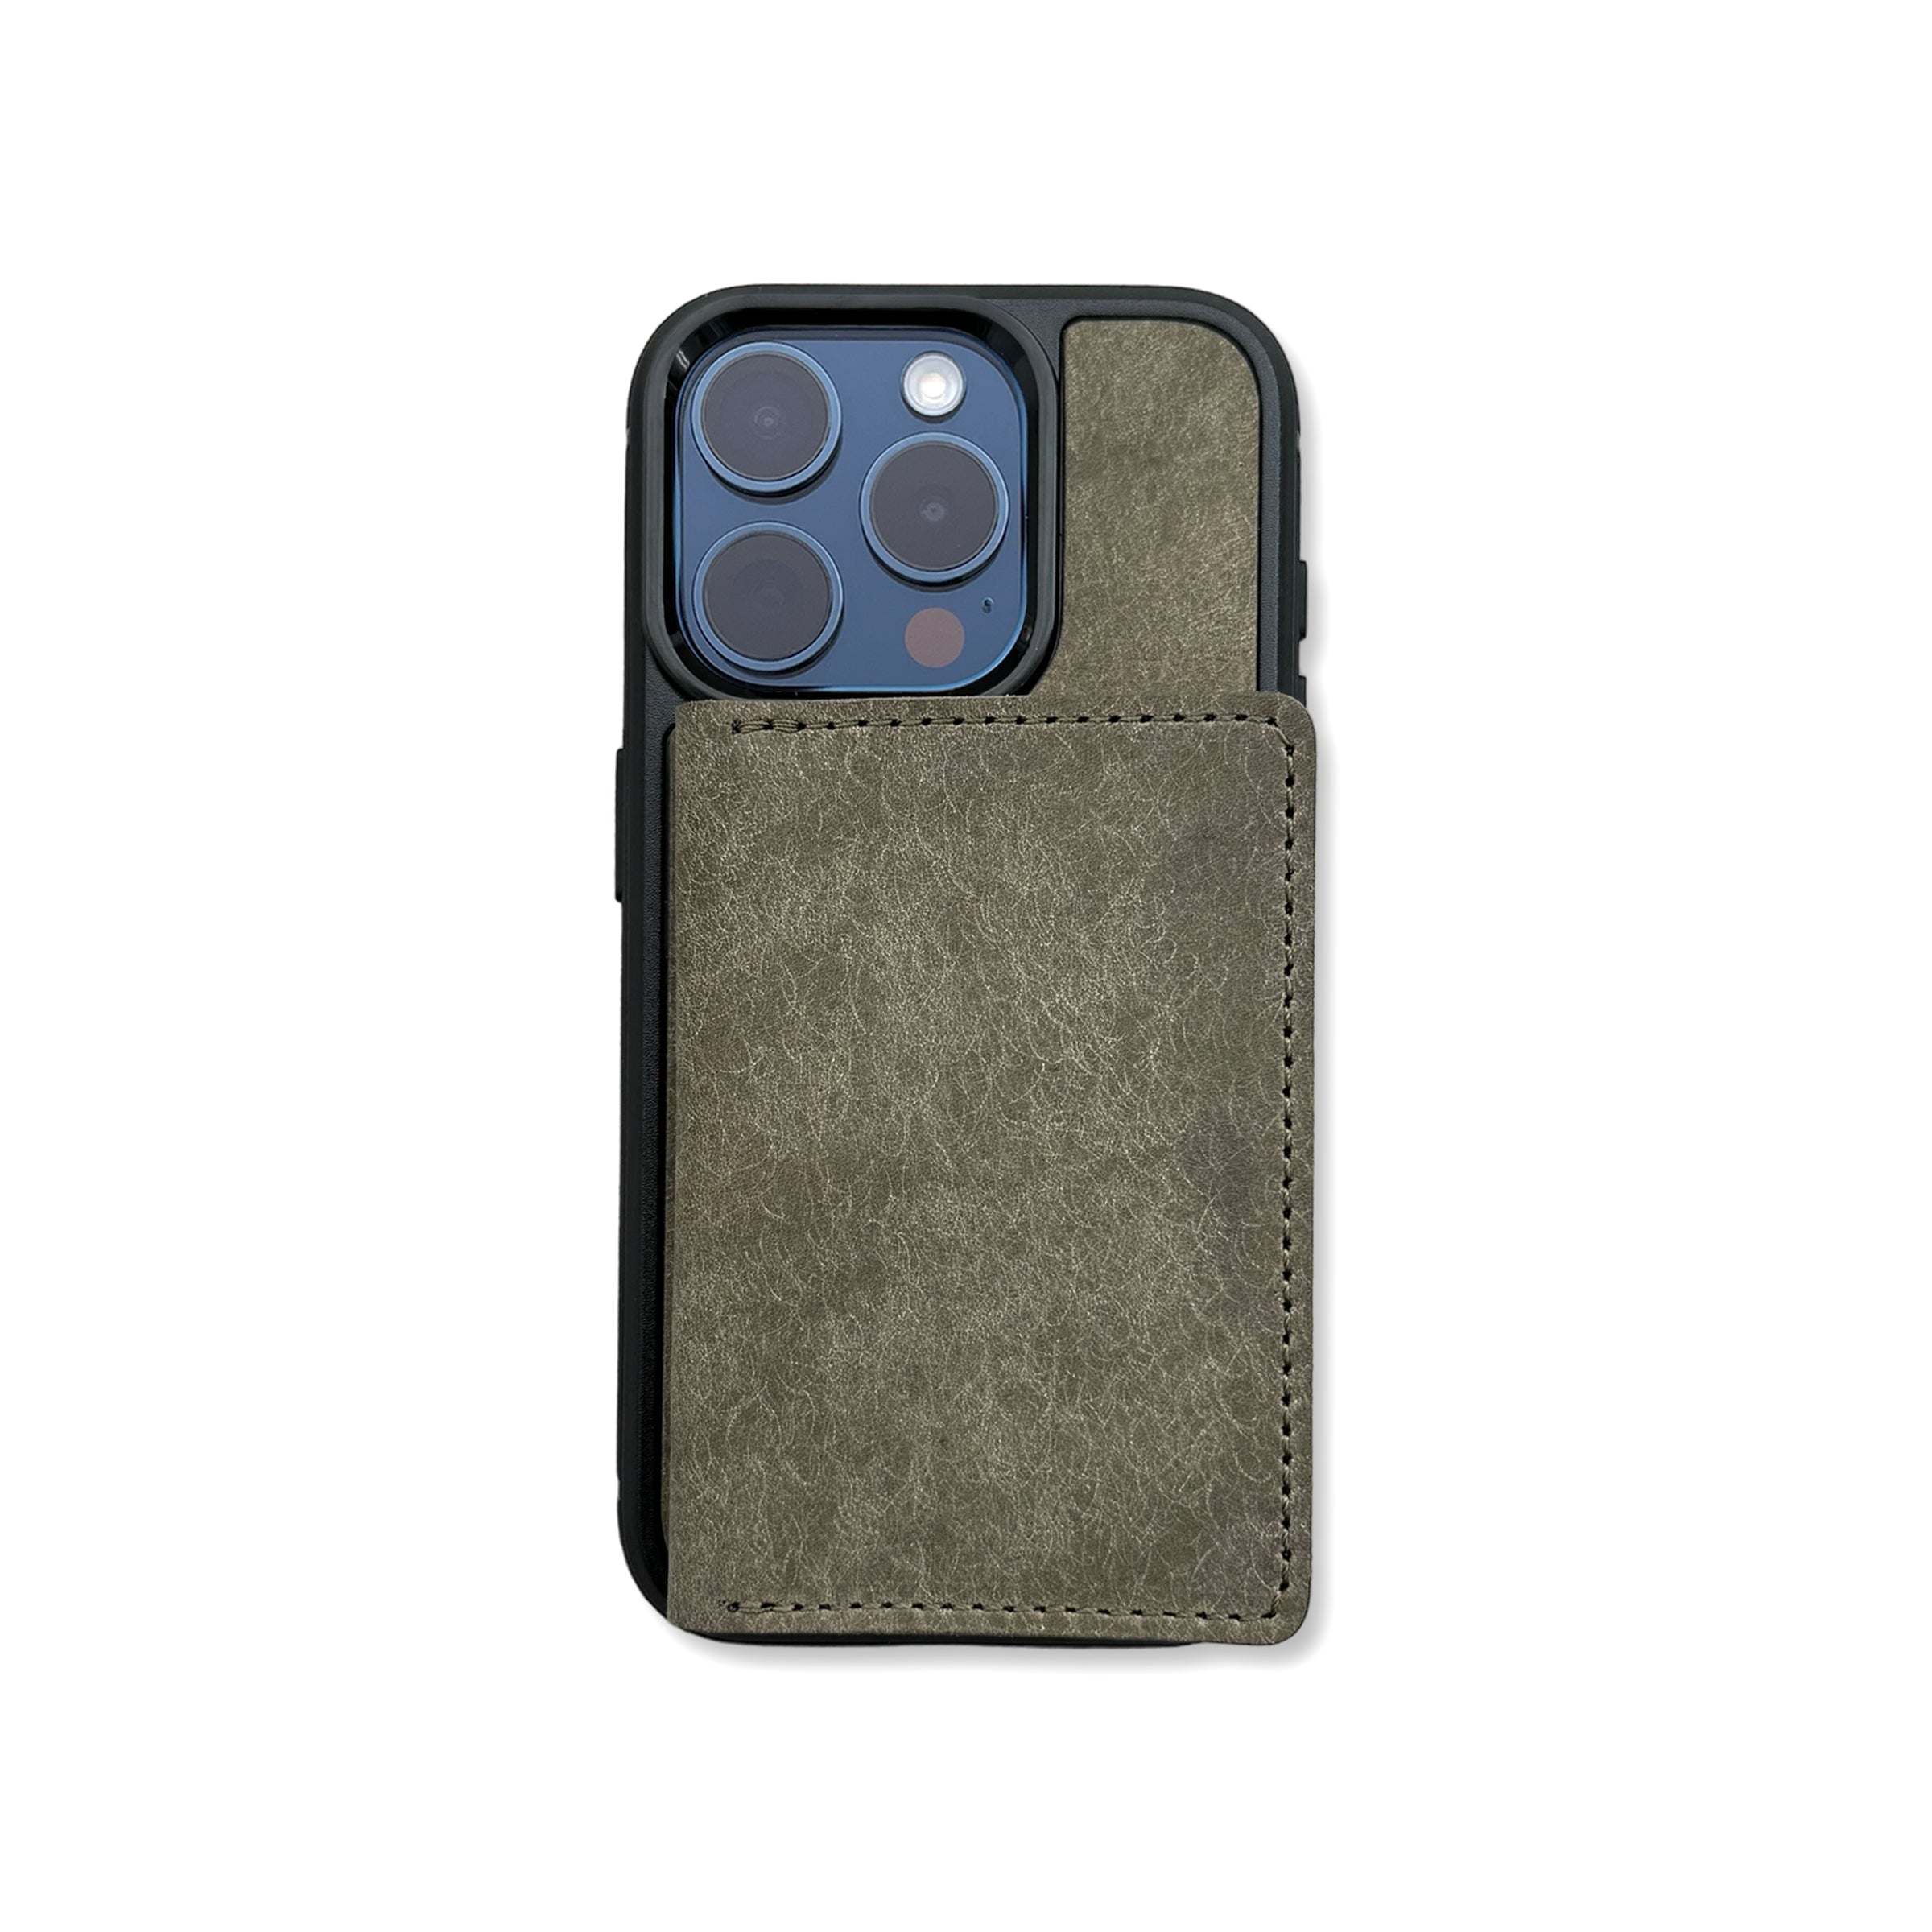 Motto Pueblo iPhone case and wallet